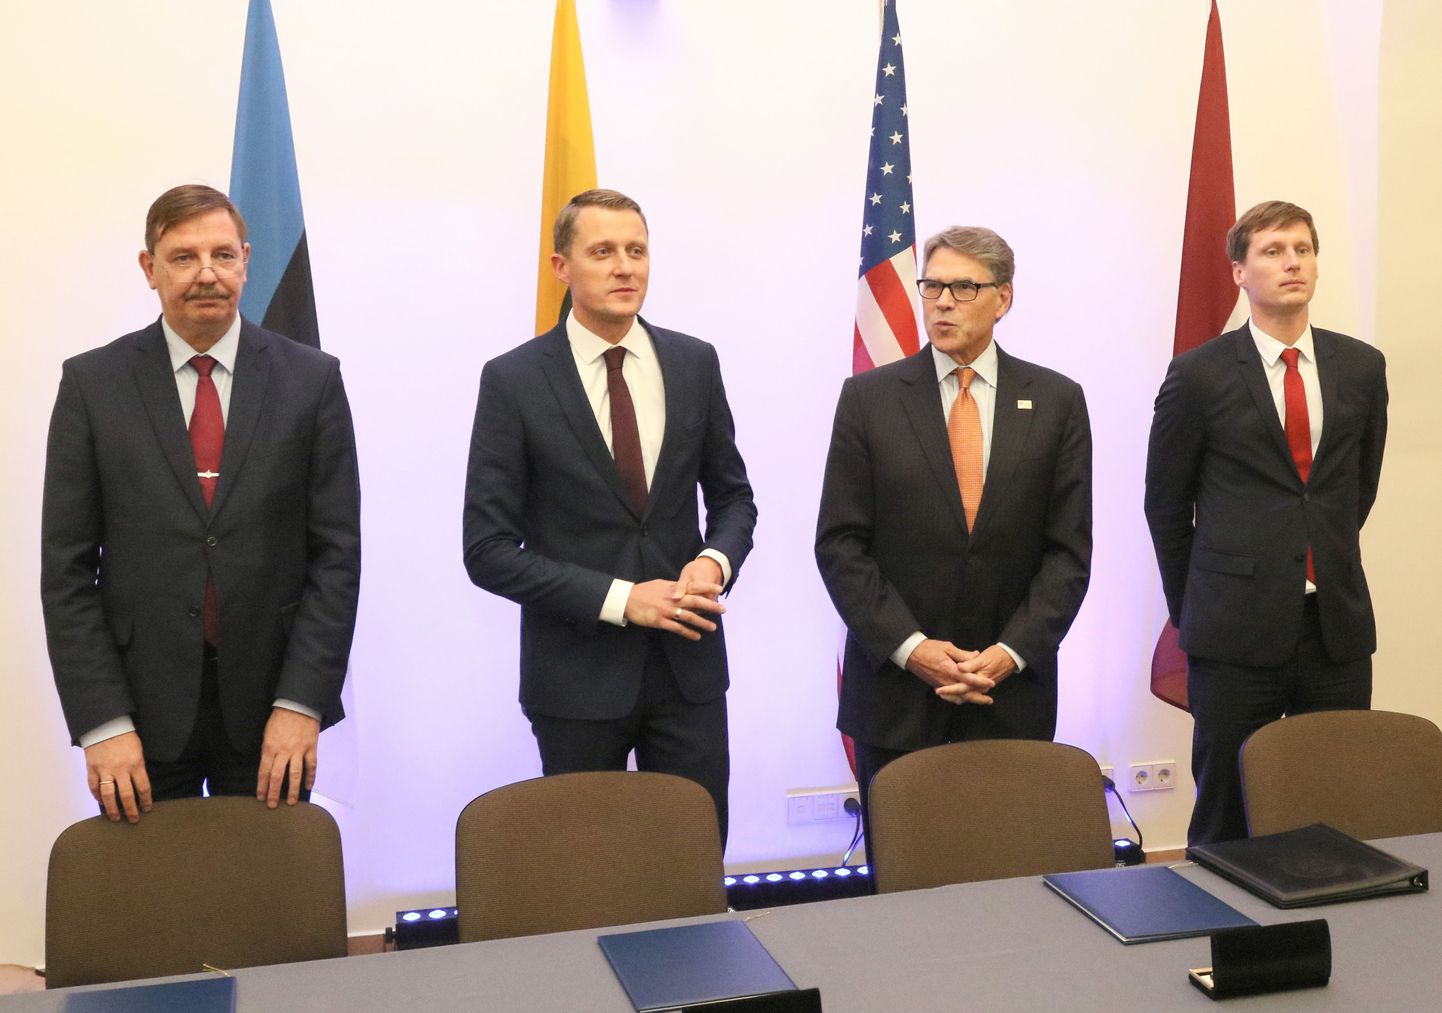 Majandus- ja taristuminister Taavi Aas, Leedu energiaminister Zygimantas Vaiciunas, USA energiaminister Rick Perry, Läti energiaminister Ralfs Nemiro.